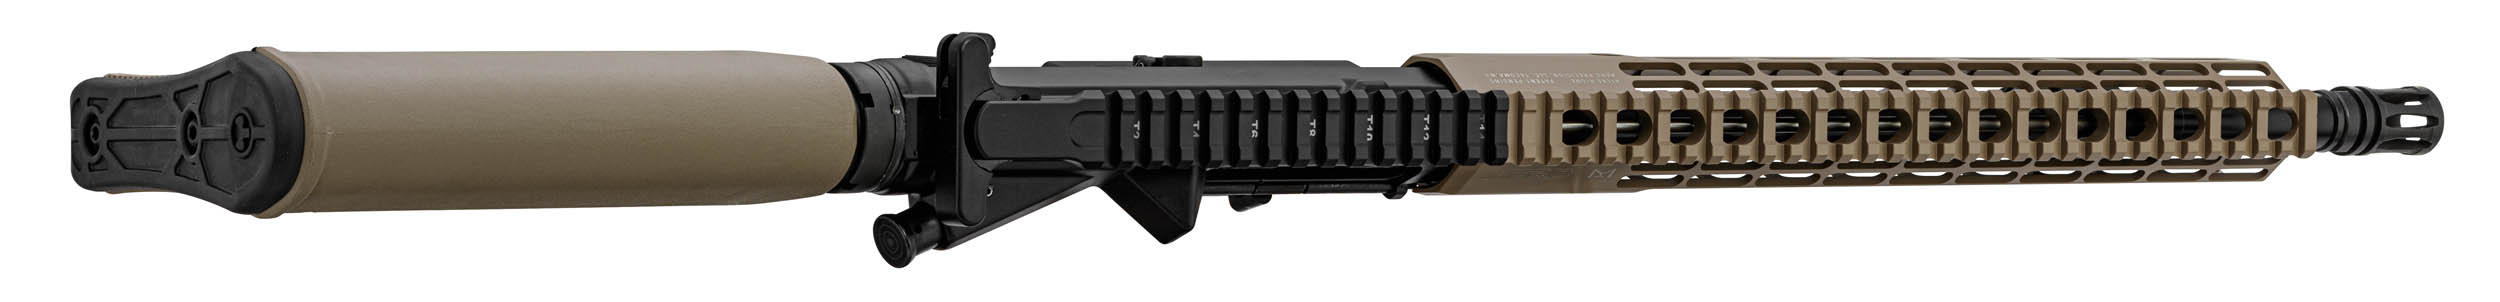 AEM4147-08 Carabine type AR15 AERO PRECISION M4E1 noir canon 14.5 &#039;&#039; cal. 5.56mm Noir / FDE